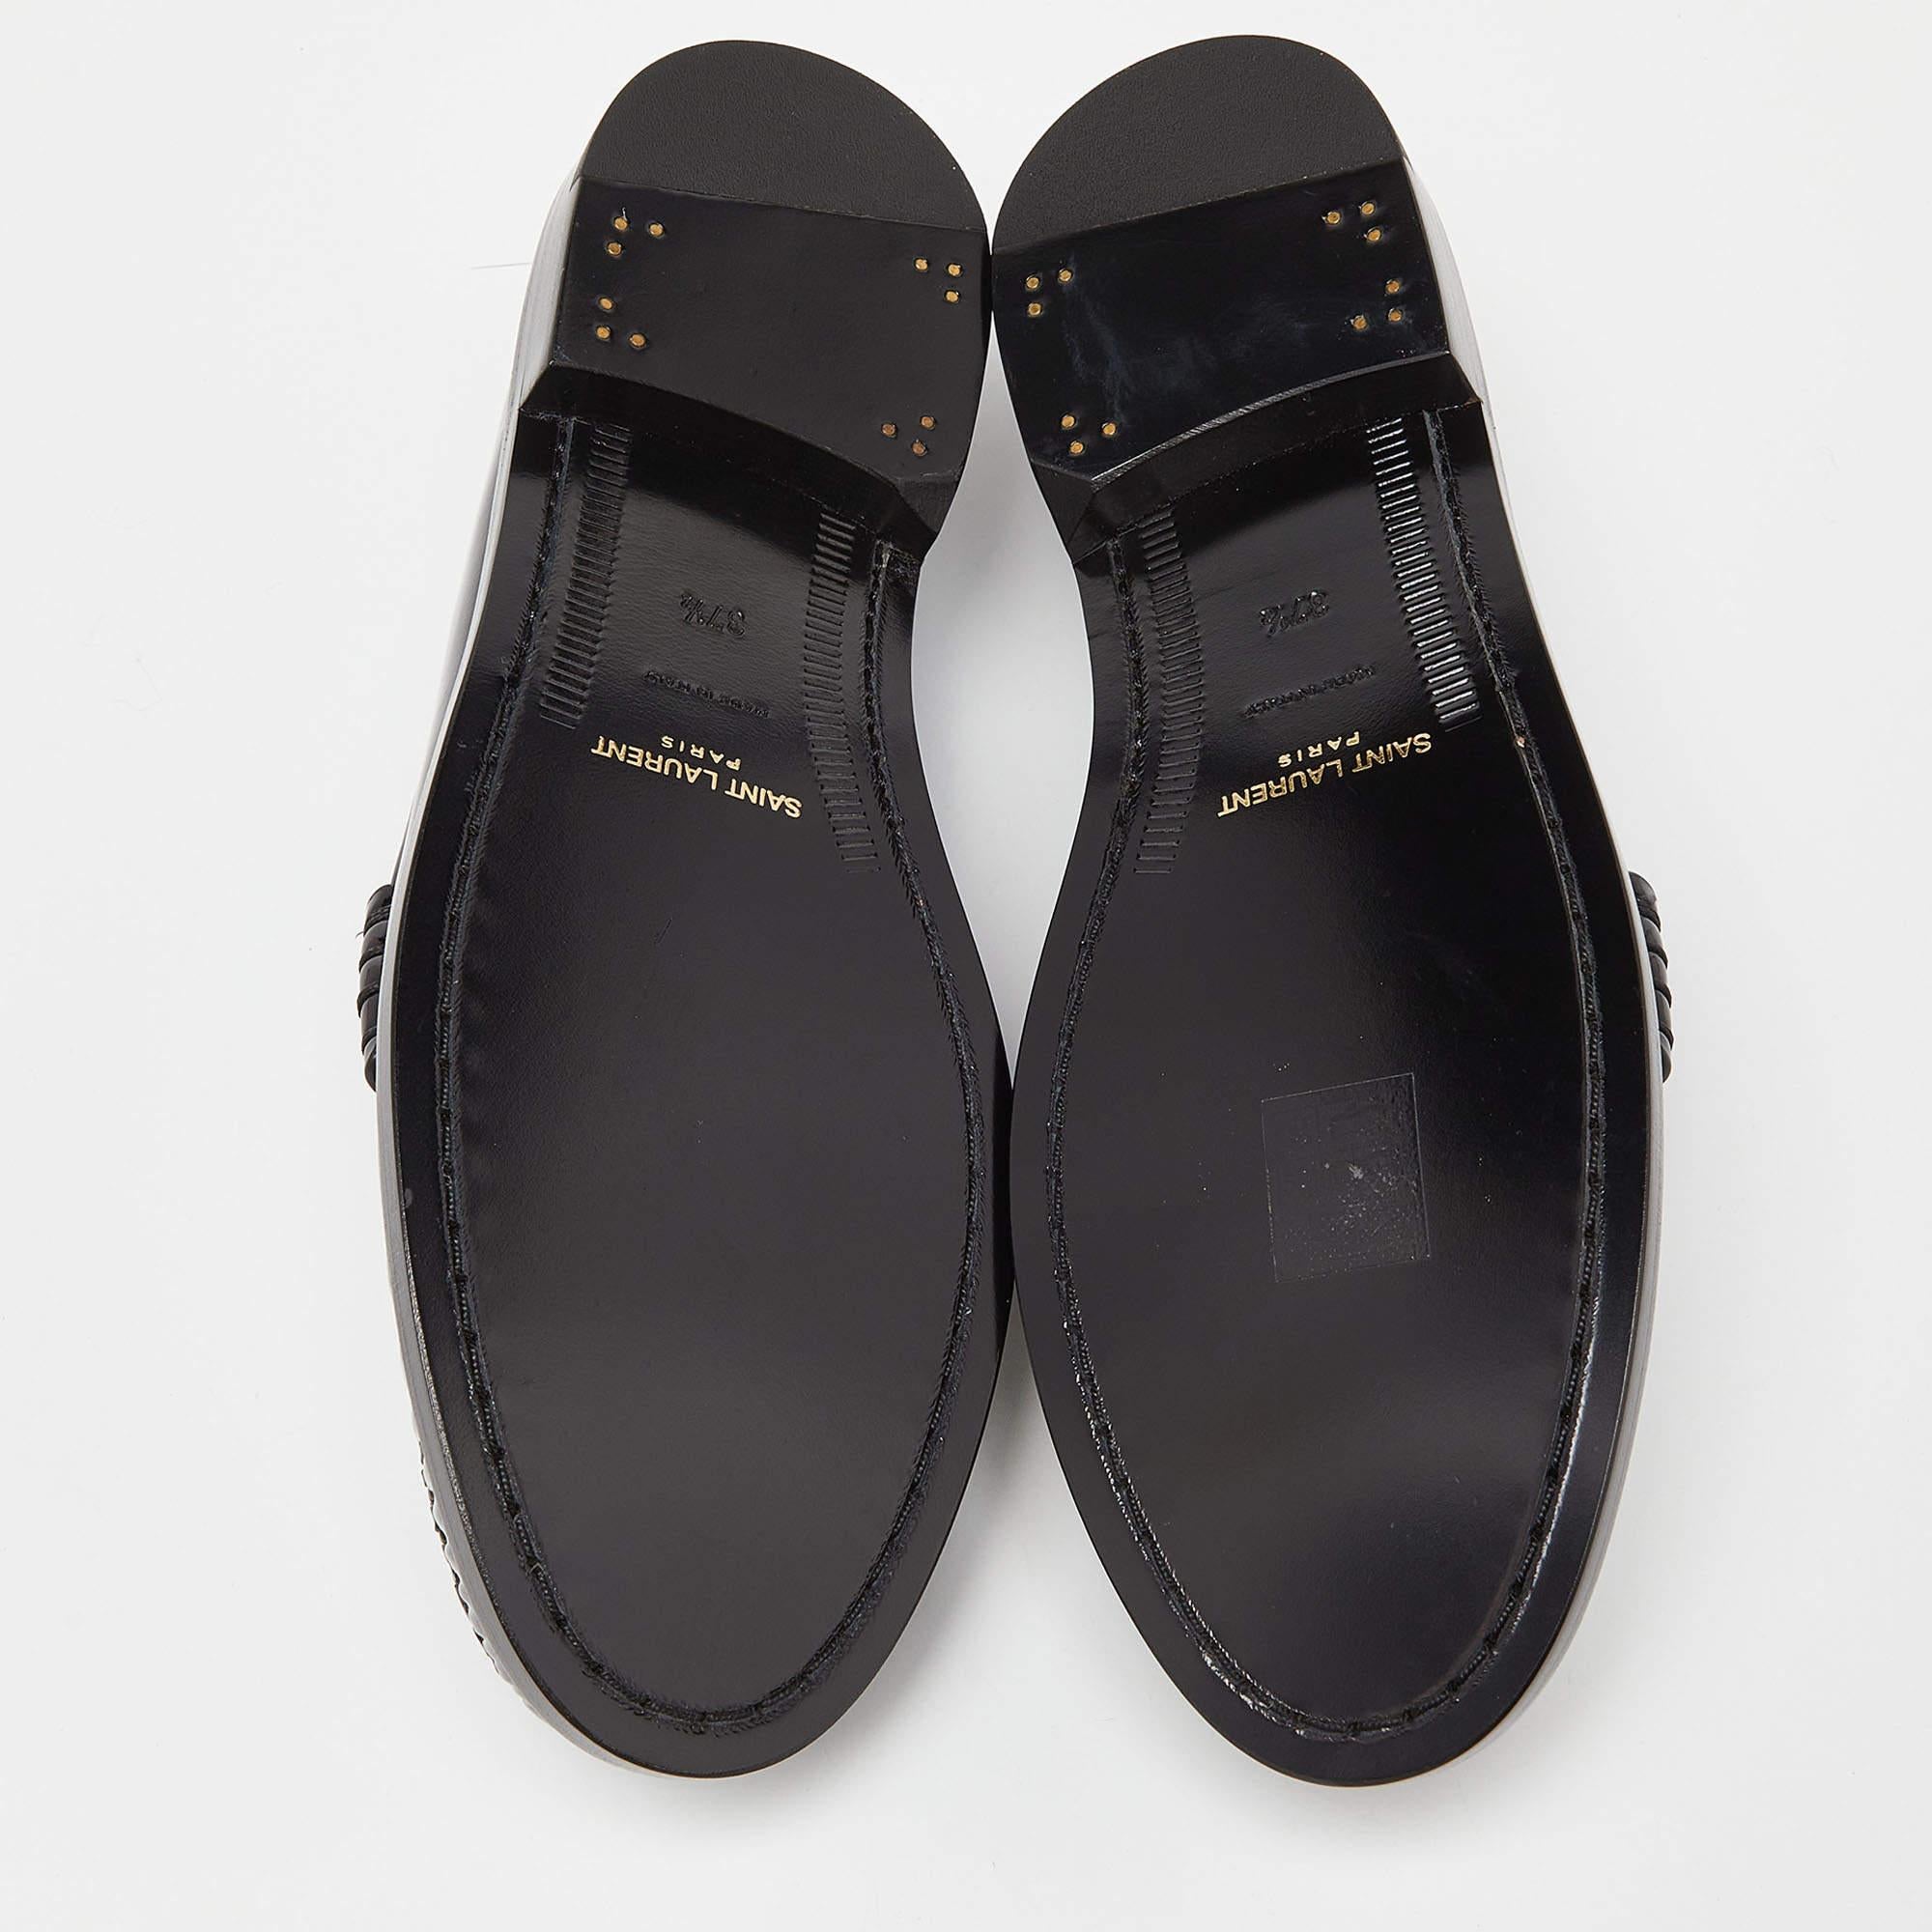 Saint Laurent Black Patent Leather Penny Le Loafers Size 37.5 2